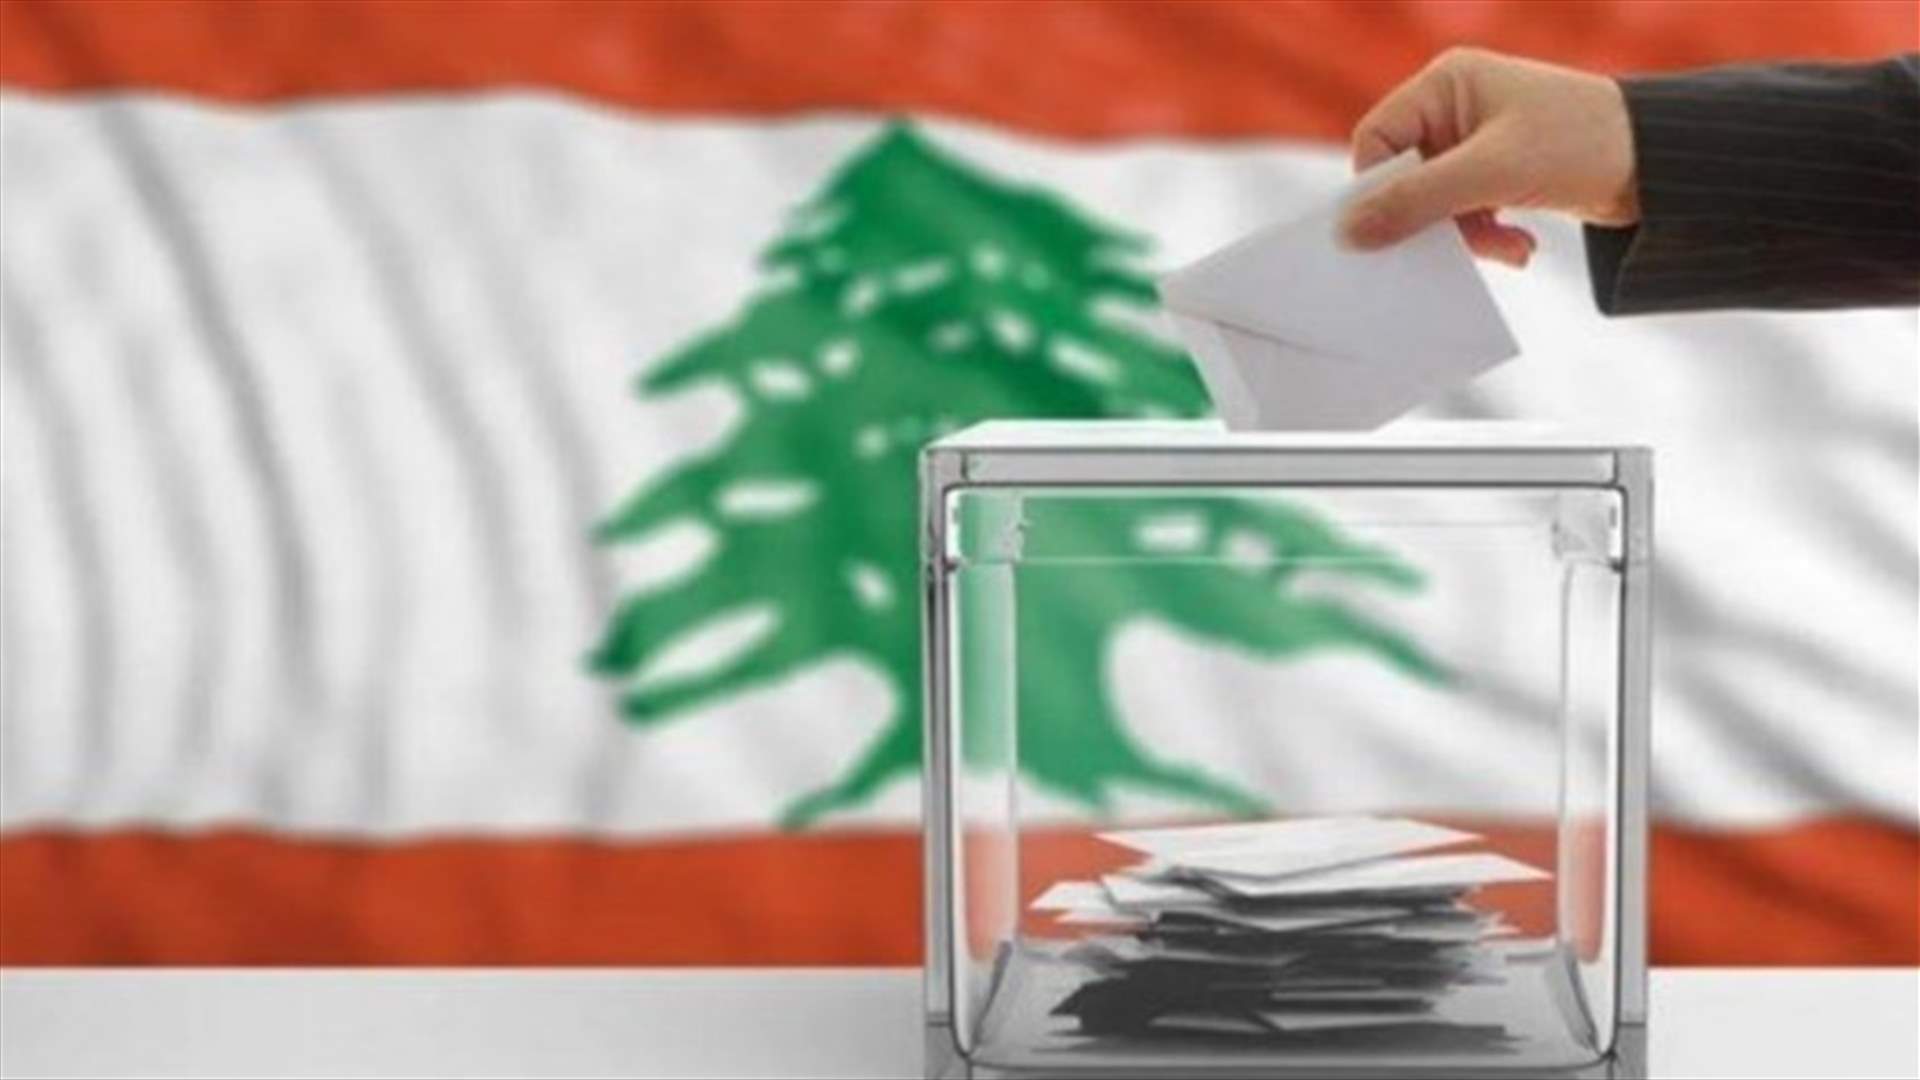 مرشحان لأحمد الحريري فازا على حساب مرشحين للرئيس فؤاد السنيورة (الأخبار)